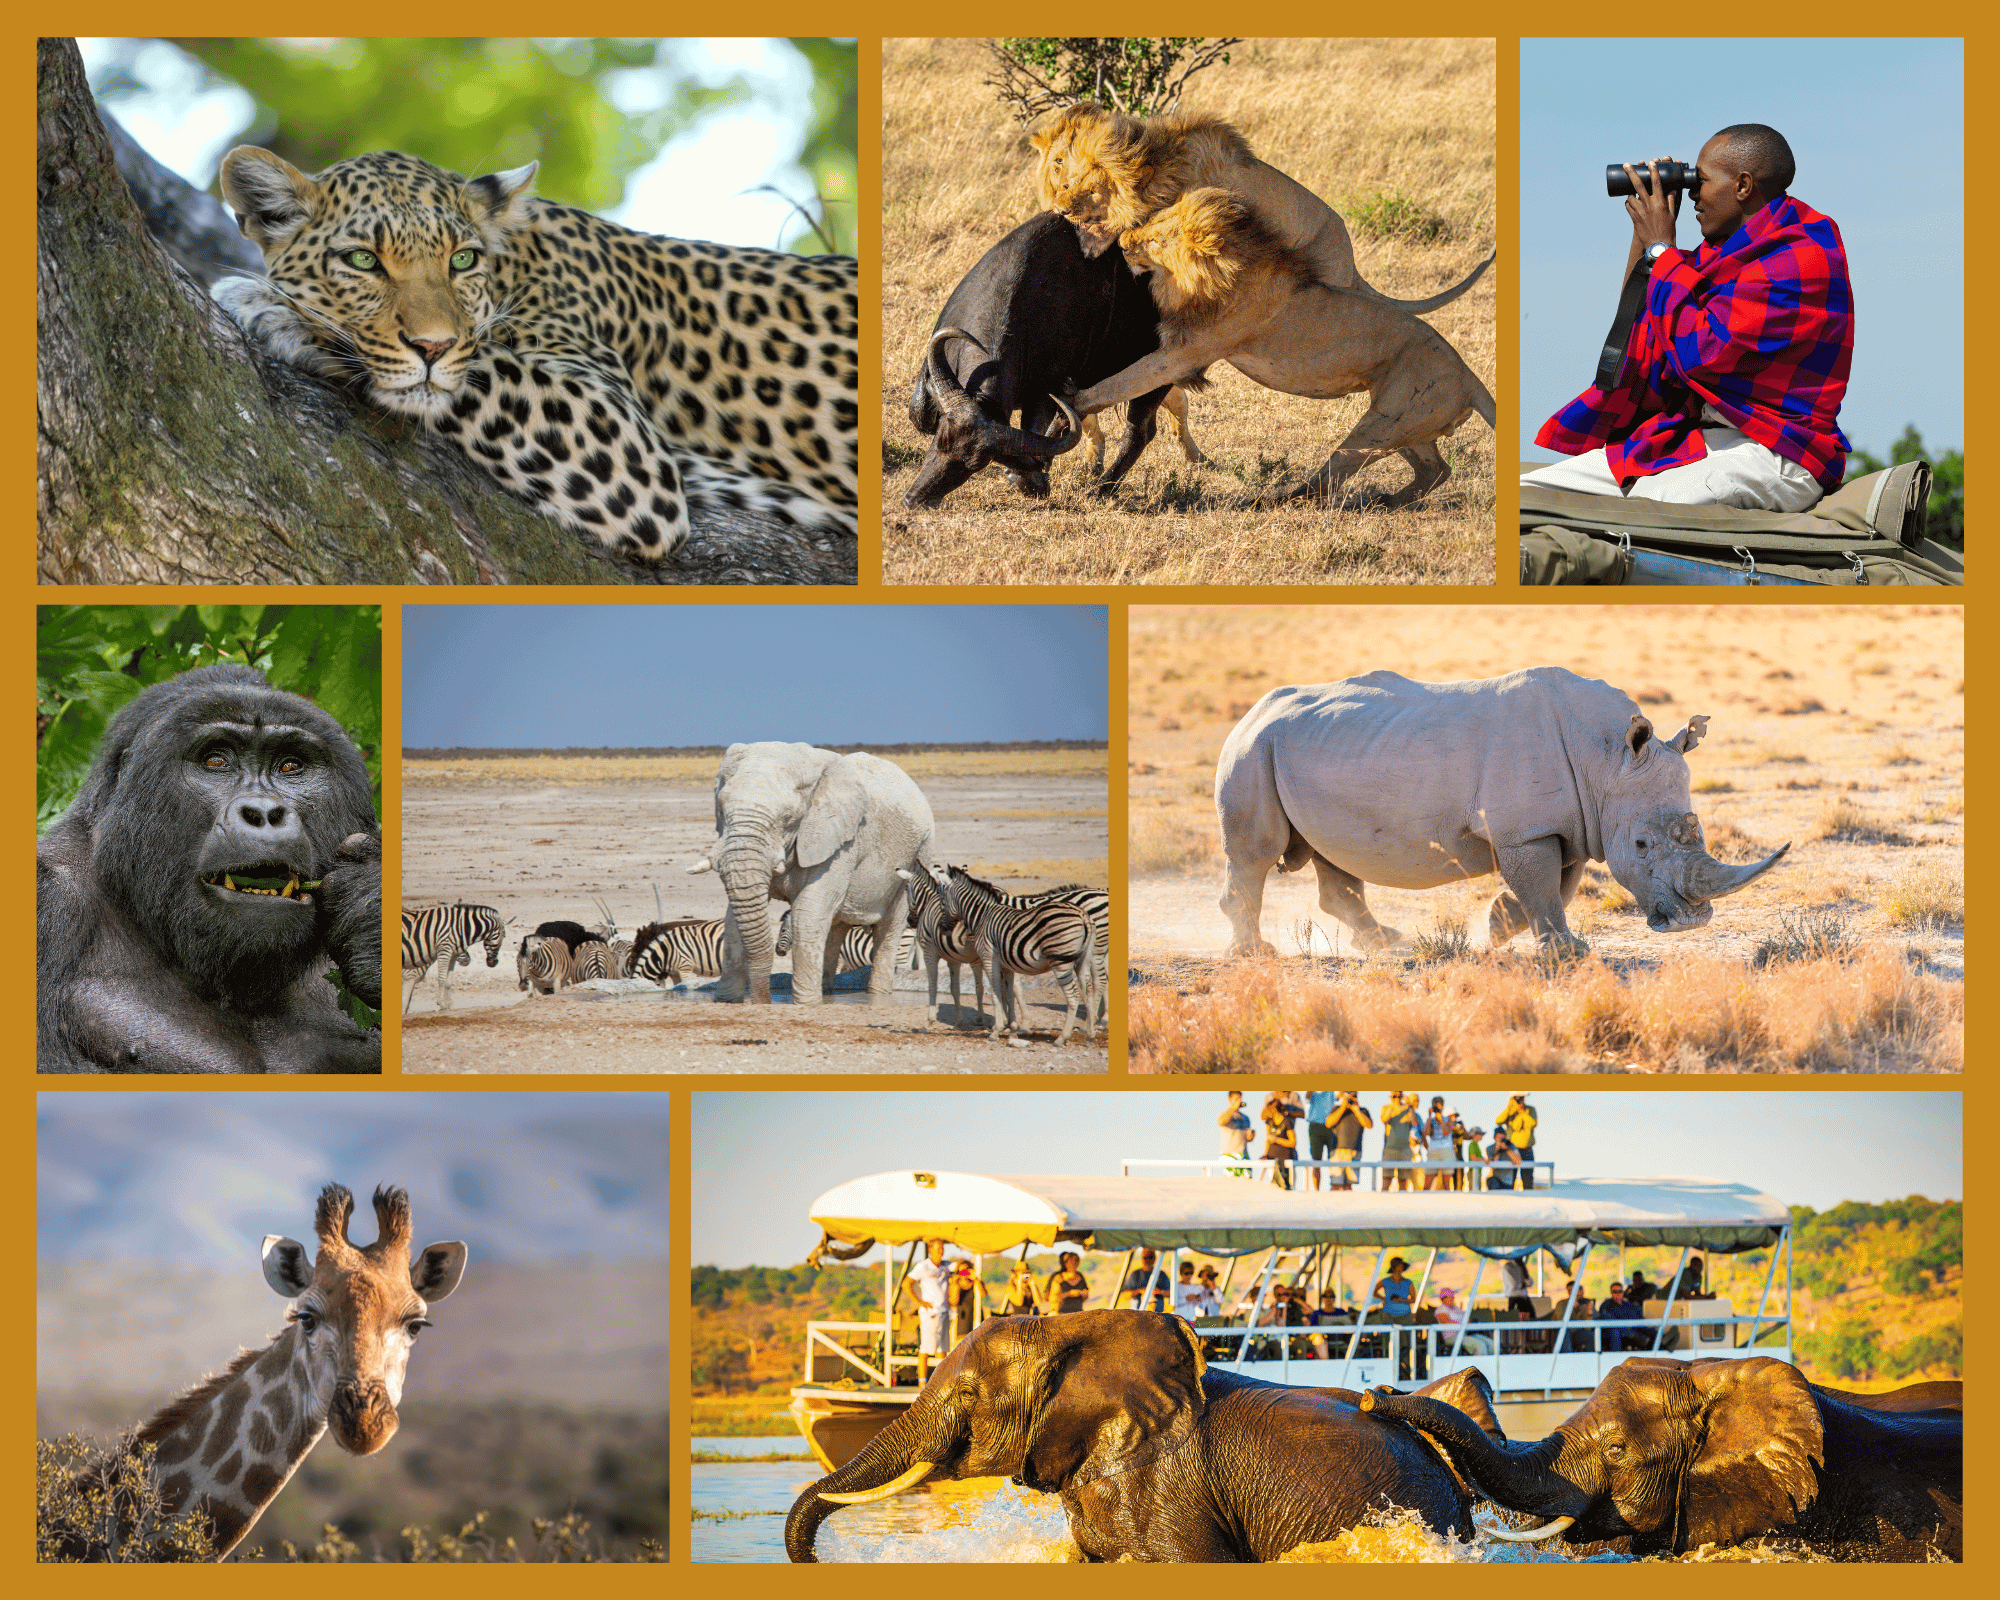 Africa Safari from India with The Earth Safari